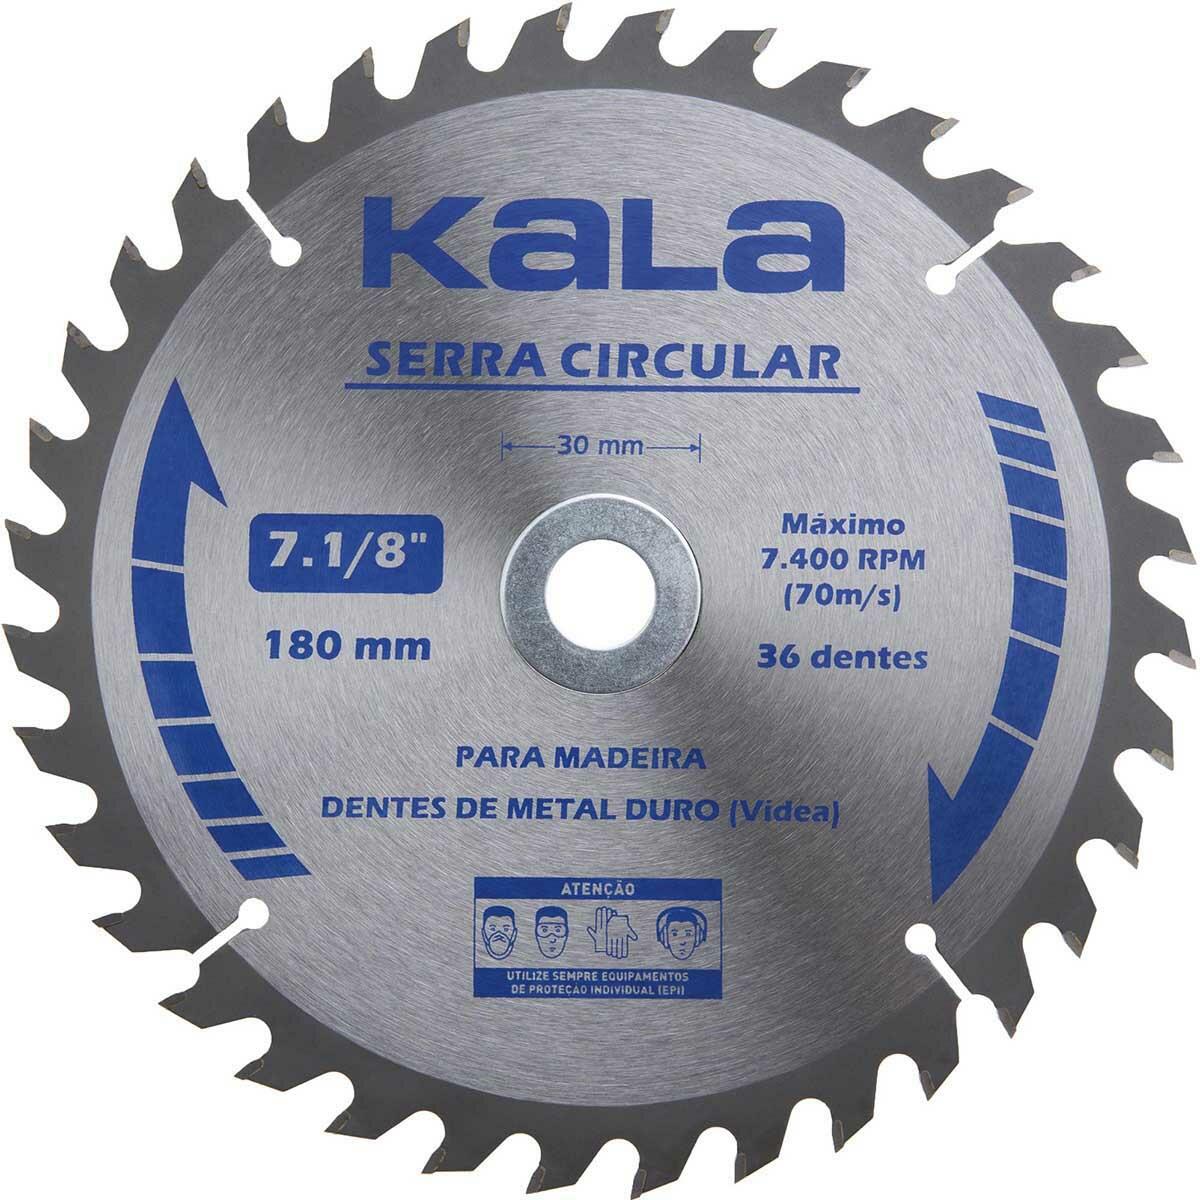 Serra Circular para Madeira com 36 Dentes 7. 1/8” Kala